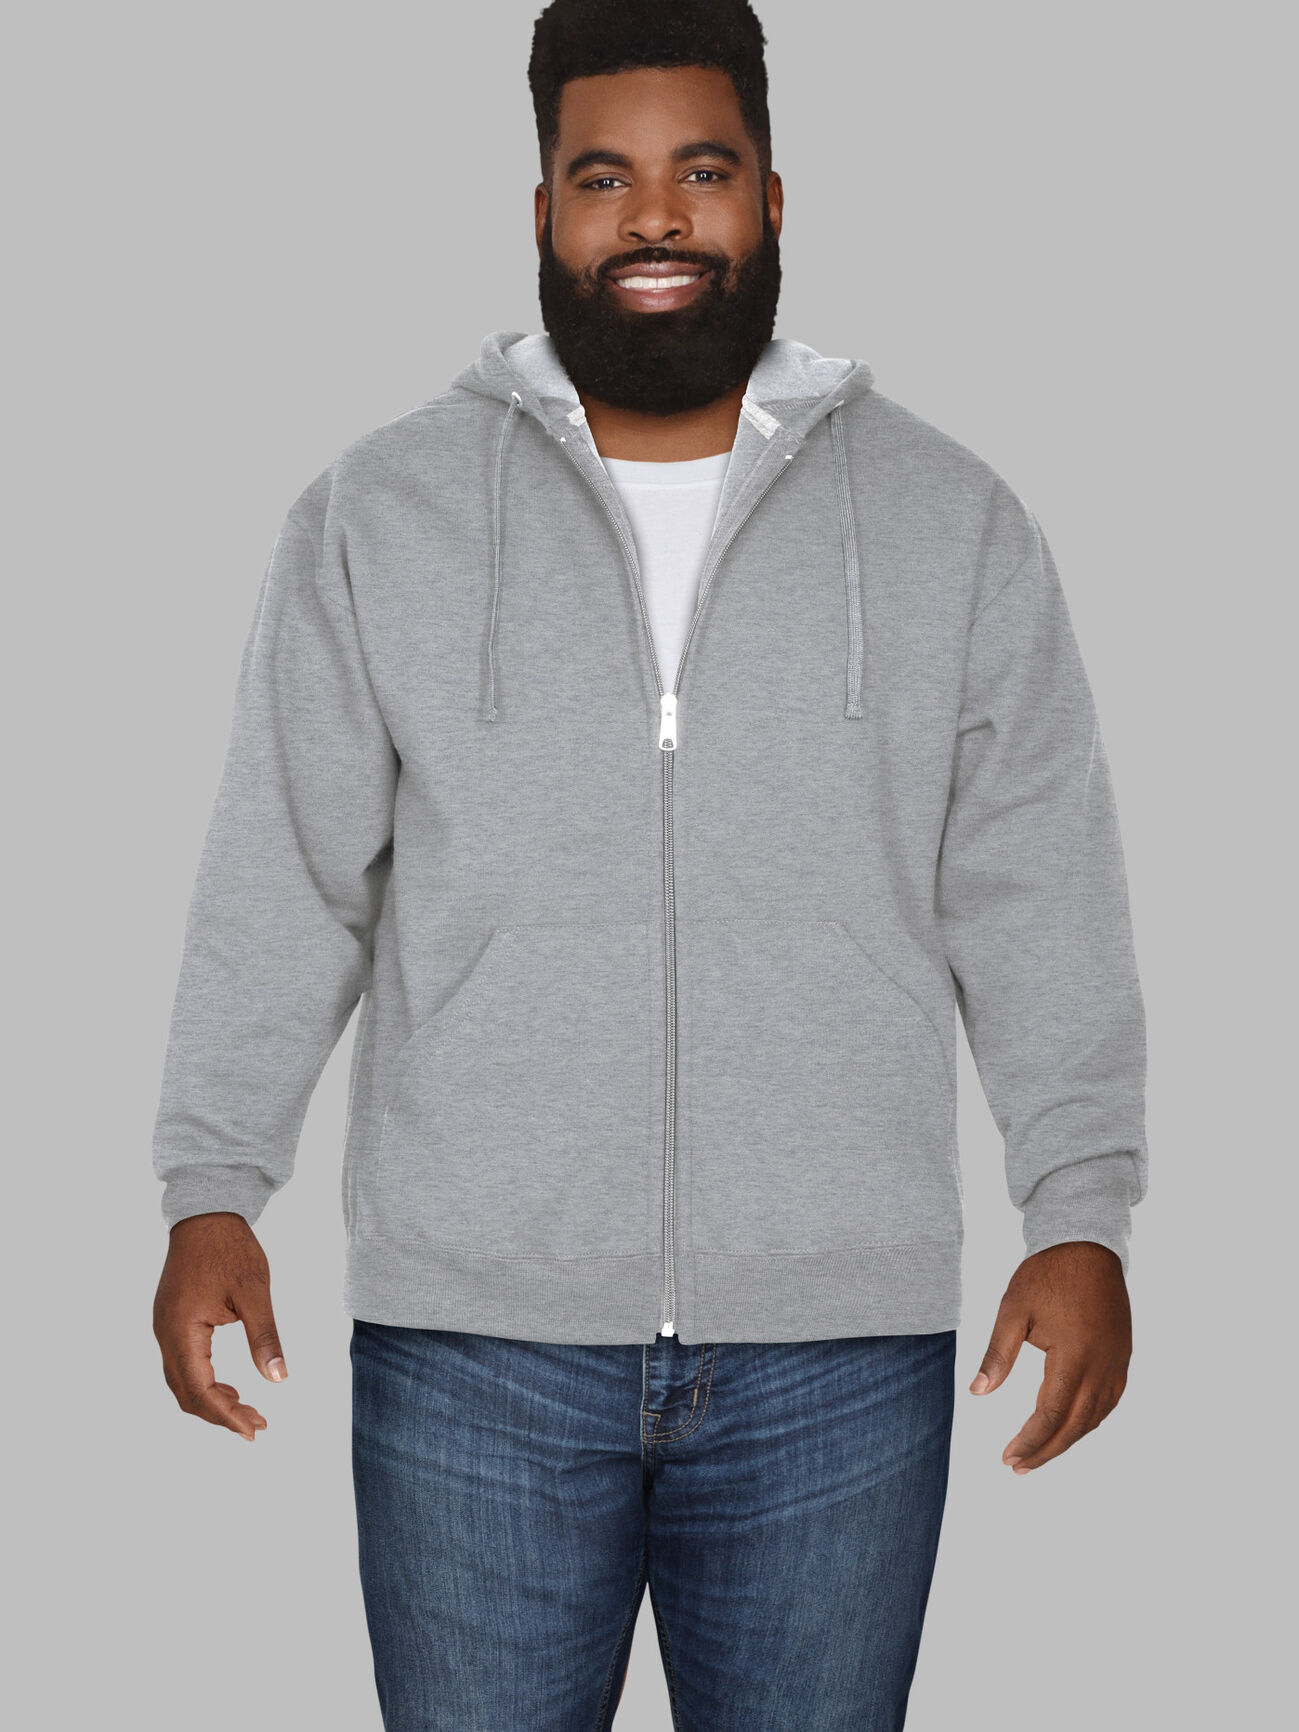 Big Men's Eversoft®  Fleece Full Zip Hoodie Sweatshirt Grey Heather